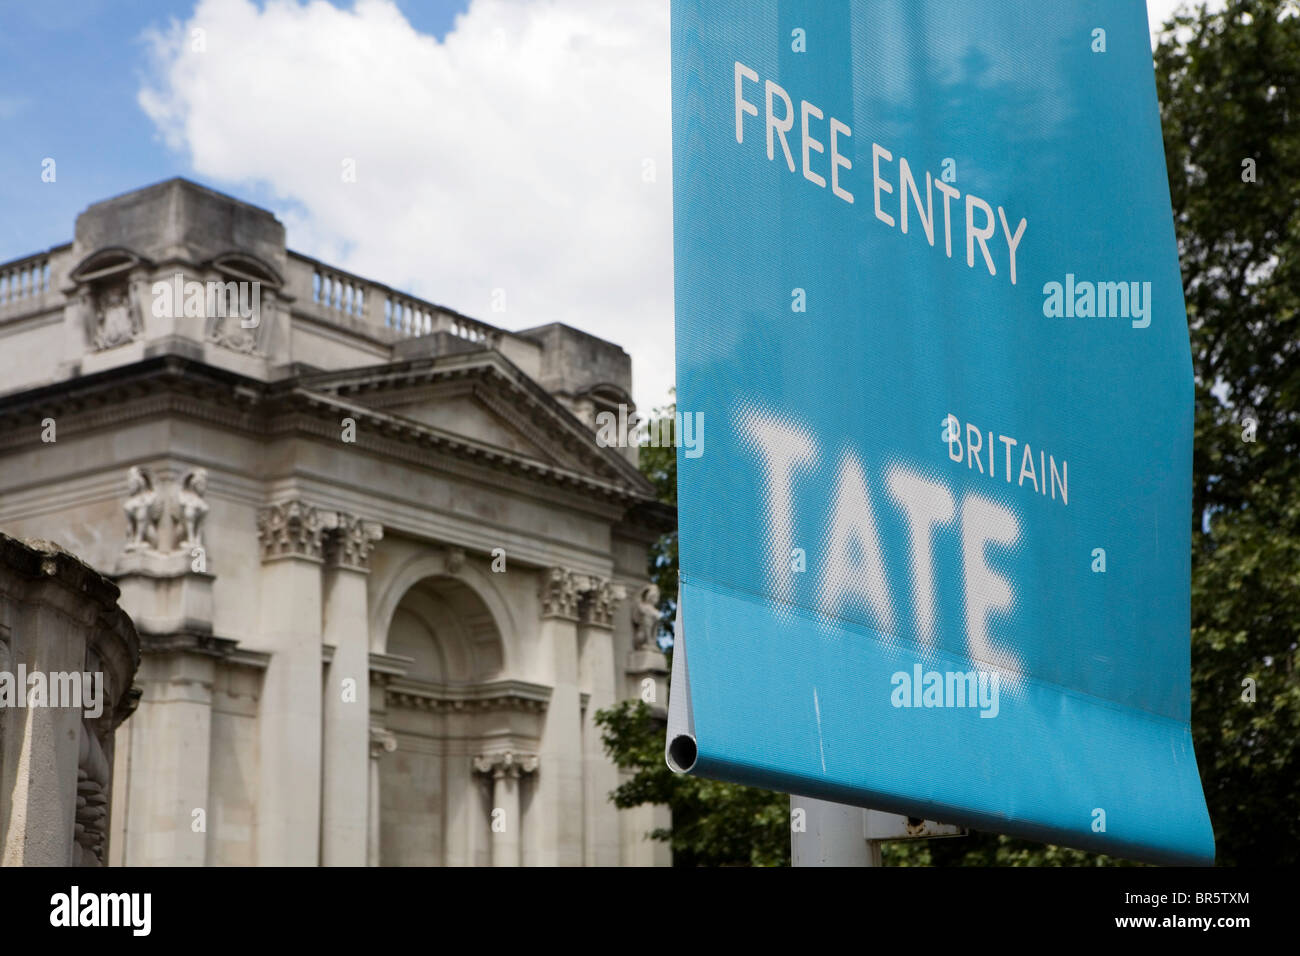 Para firmar la entrada gratuita a la galería Tate Britain. Foto de stock